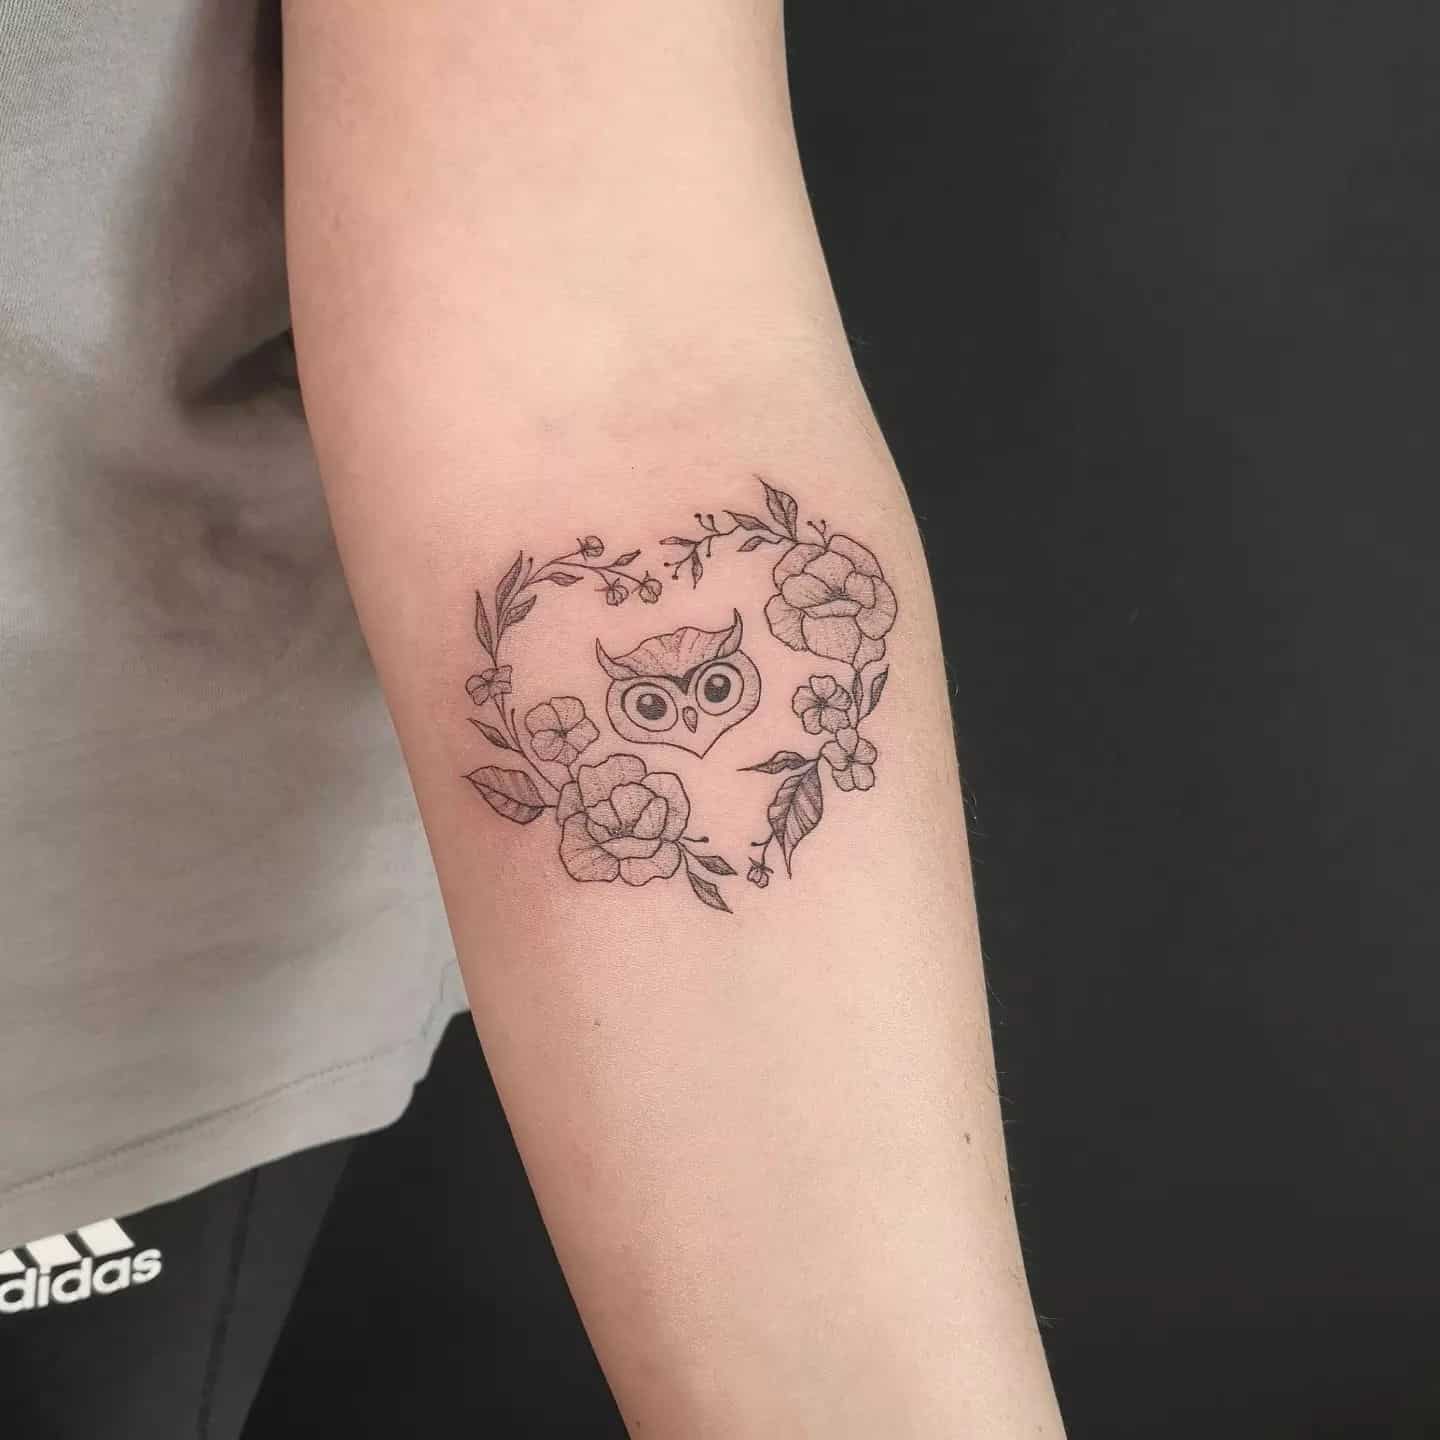 Owl sleeve tattoo by kawka ink